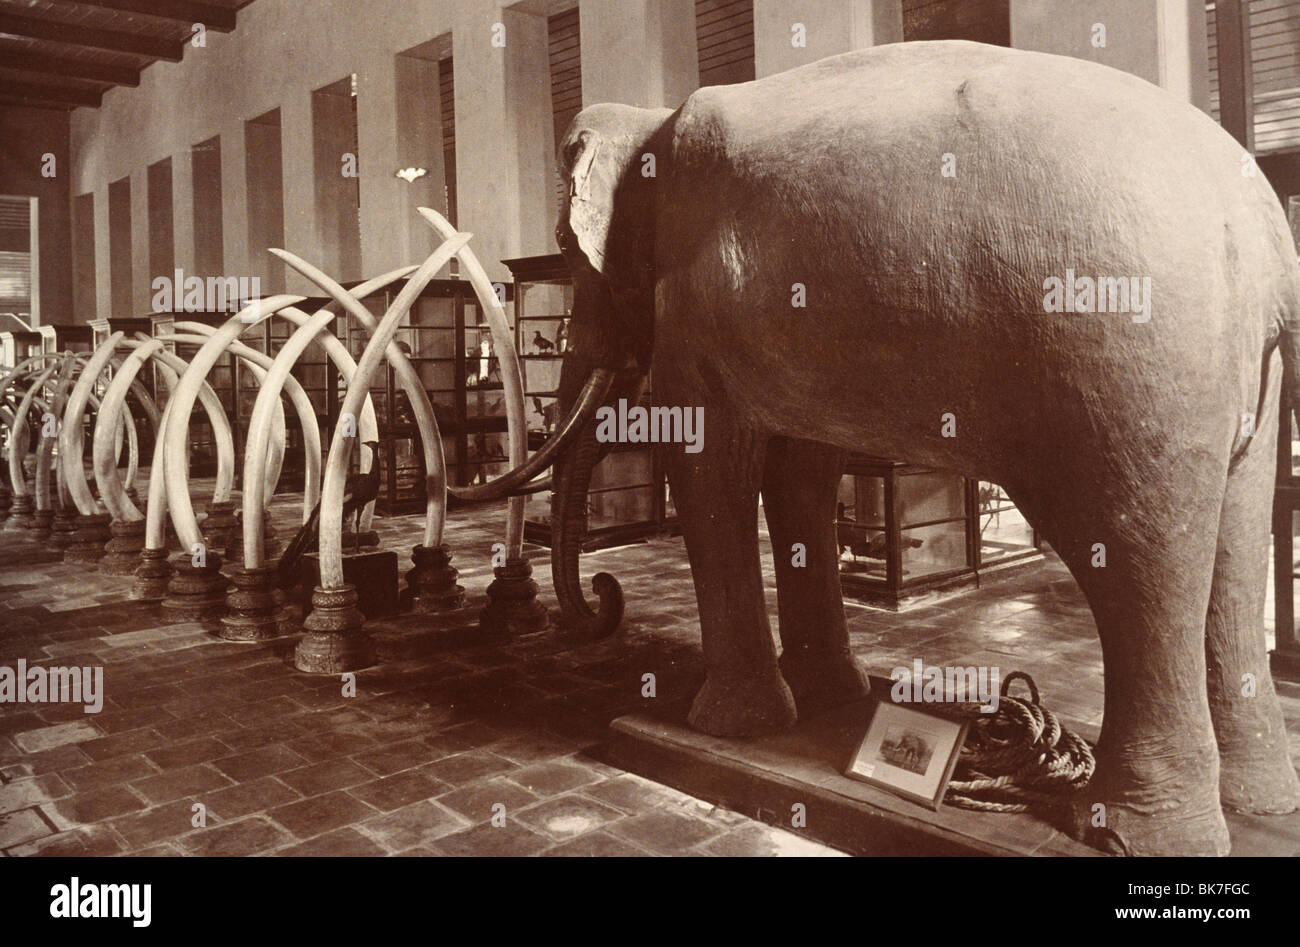 Rellenos y colmillos de marfil de elefantes que datan de alrededor de 1890, en el Museo de Bangkok, Bangkok, Tailandia, el sudeste de Asia, Asia Foto de stock